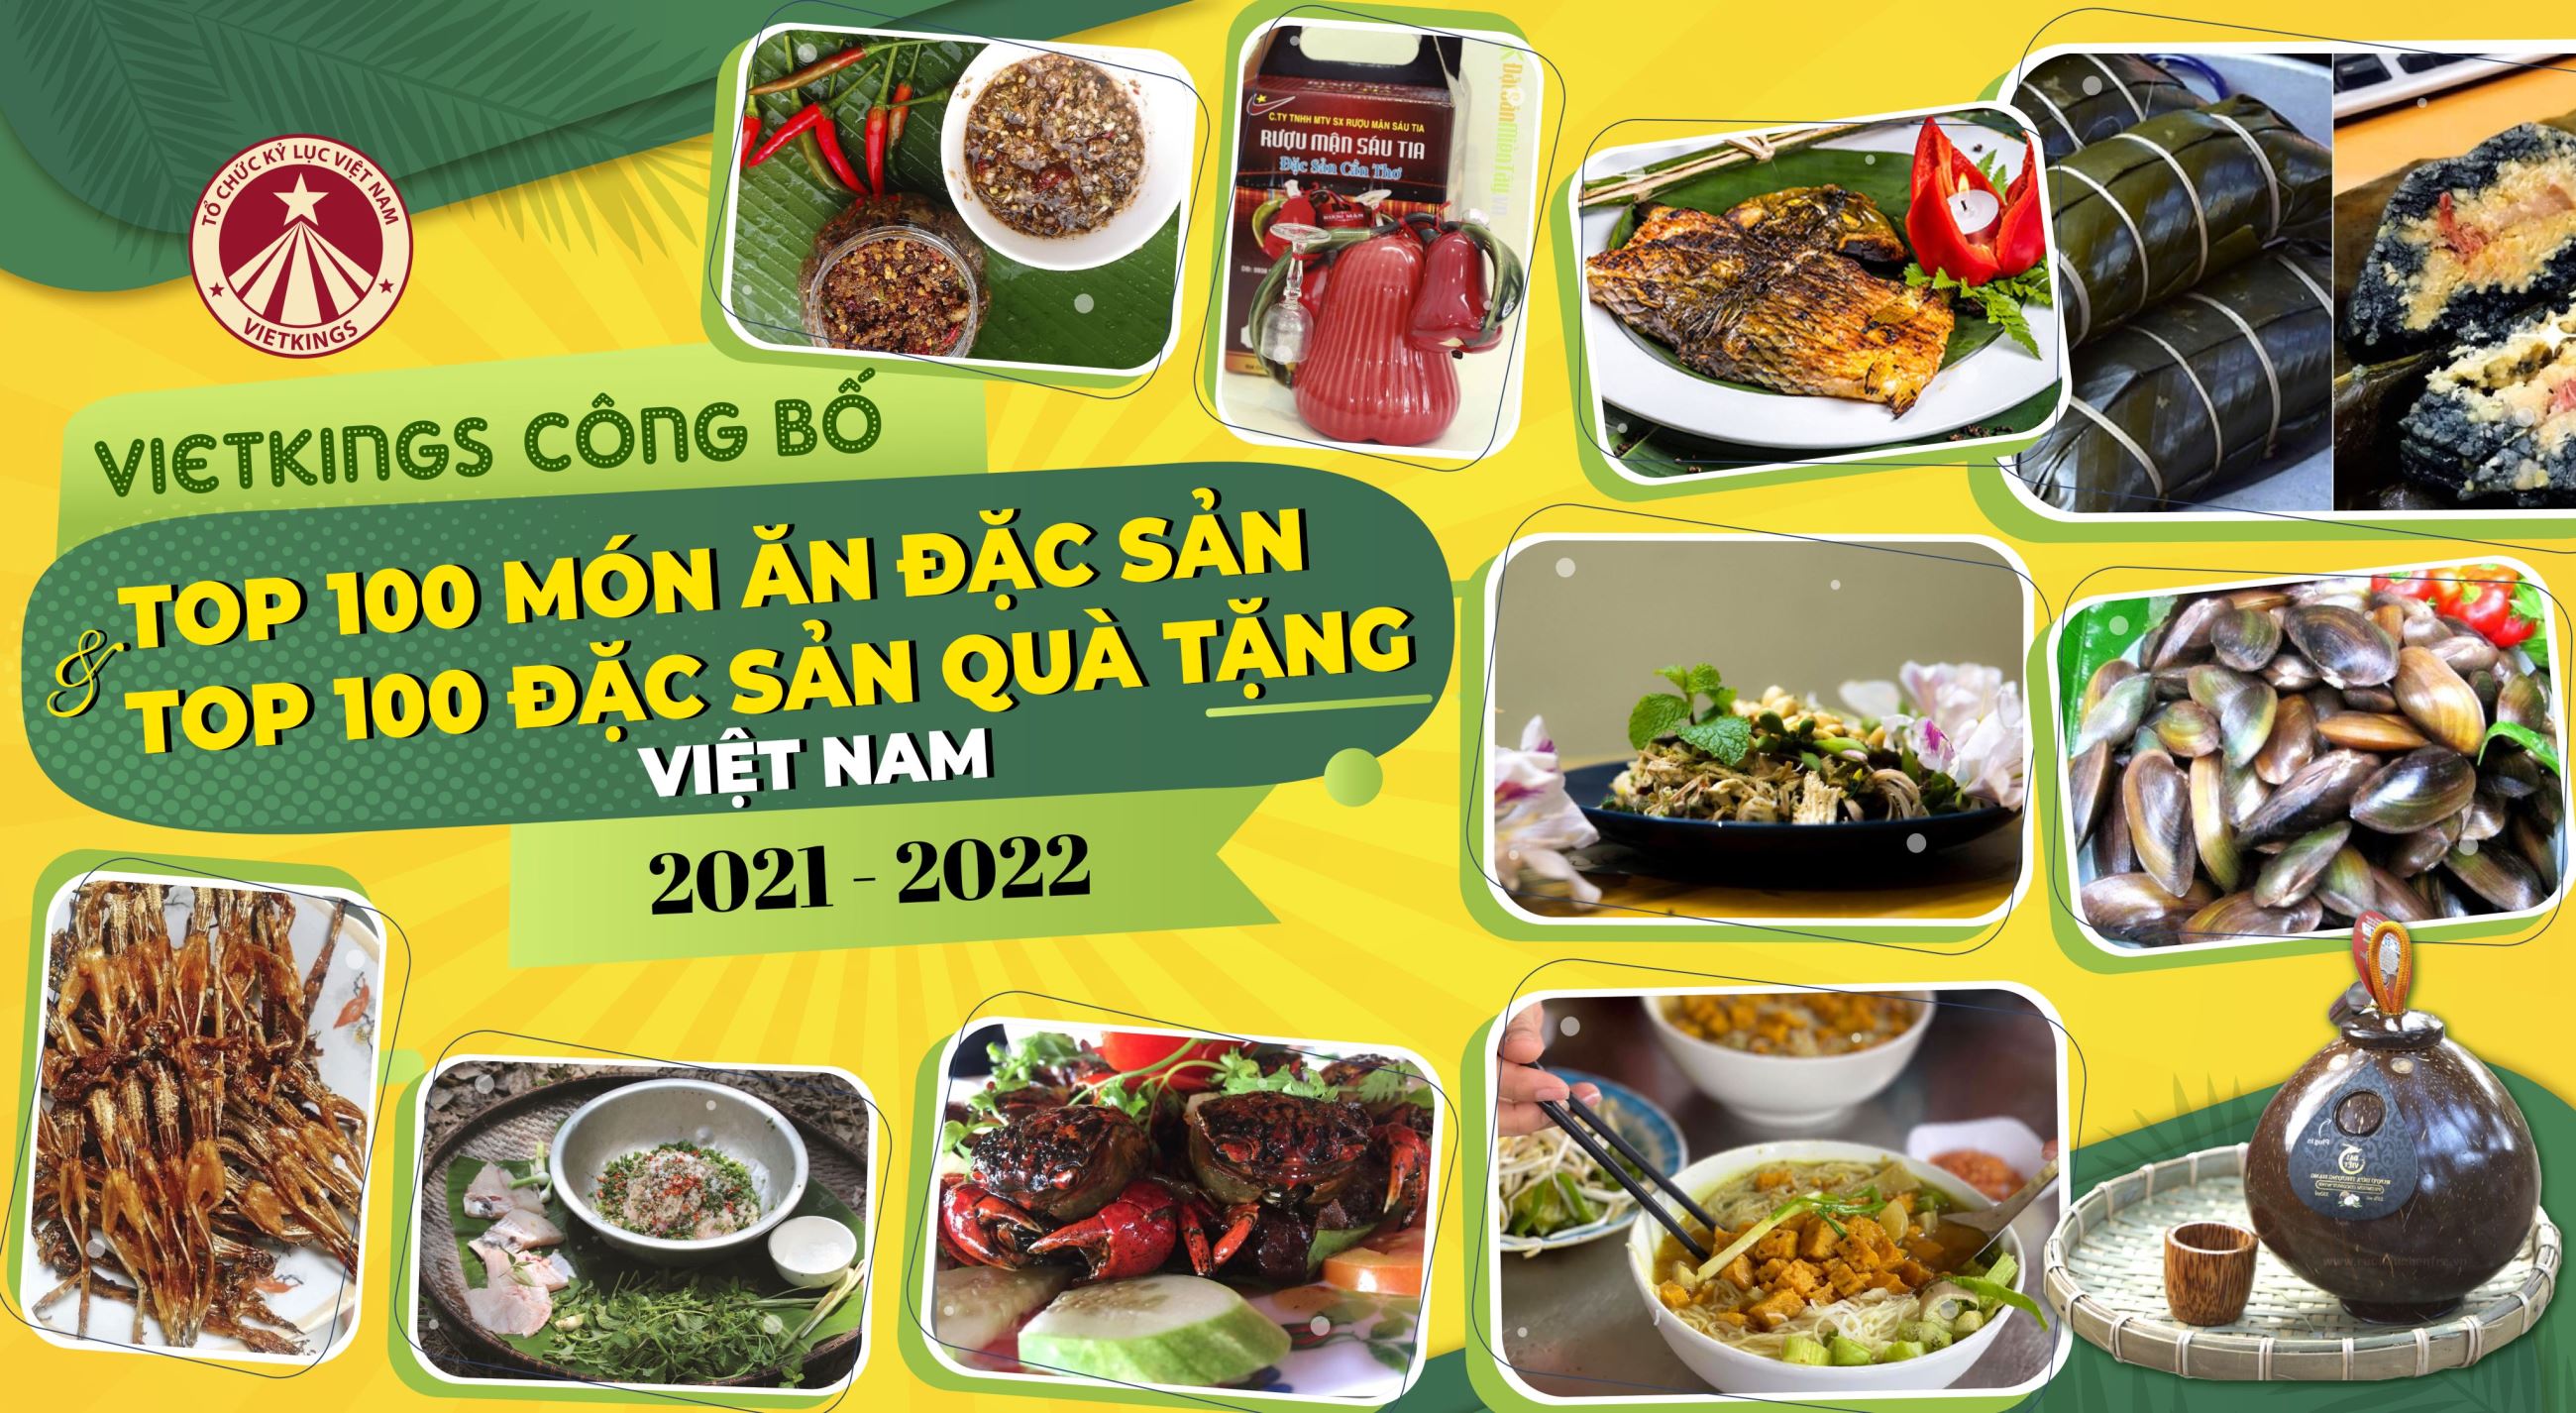 Top 100 Món ăn Đặc sản và Top 100 Đặc sản Quà tặng nổi bật của 63 Tỉnh/Thành Việt Nam (Lần IV năm 2021 – 2022)